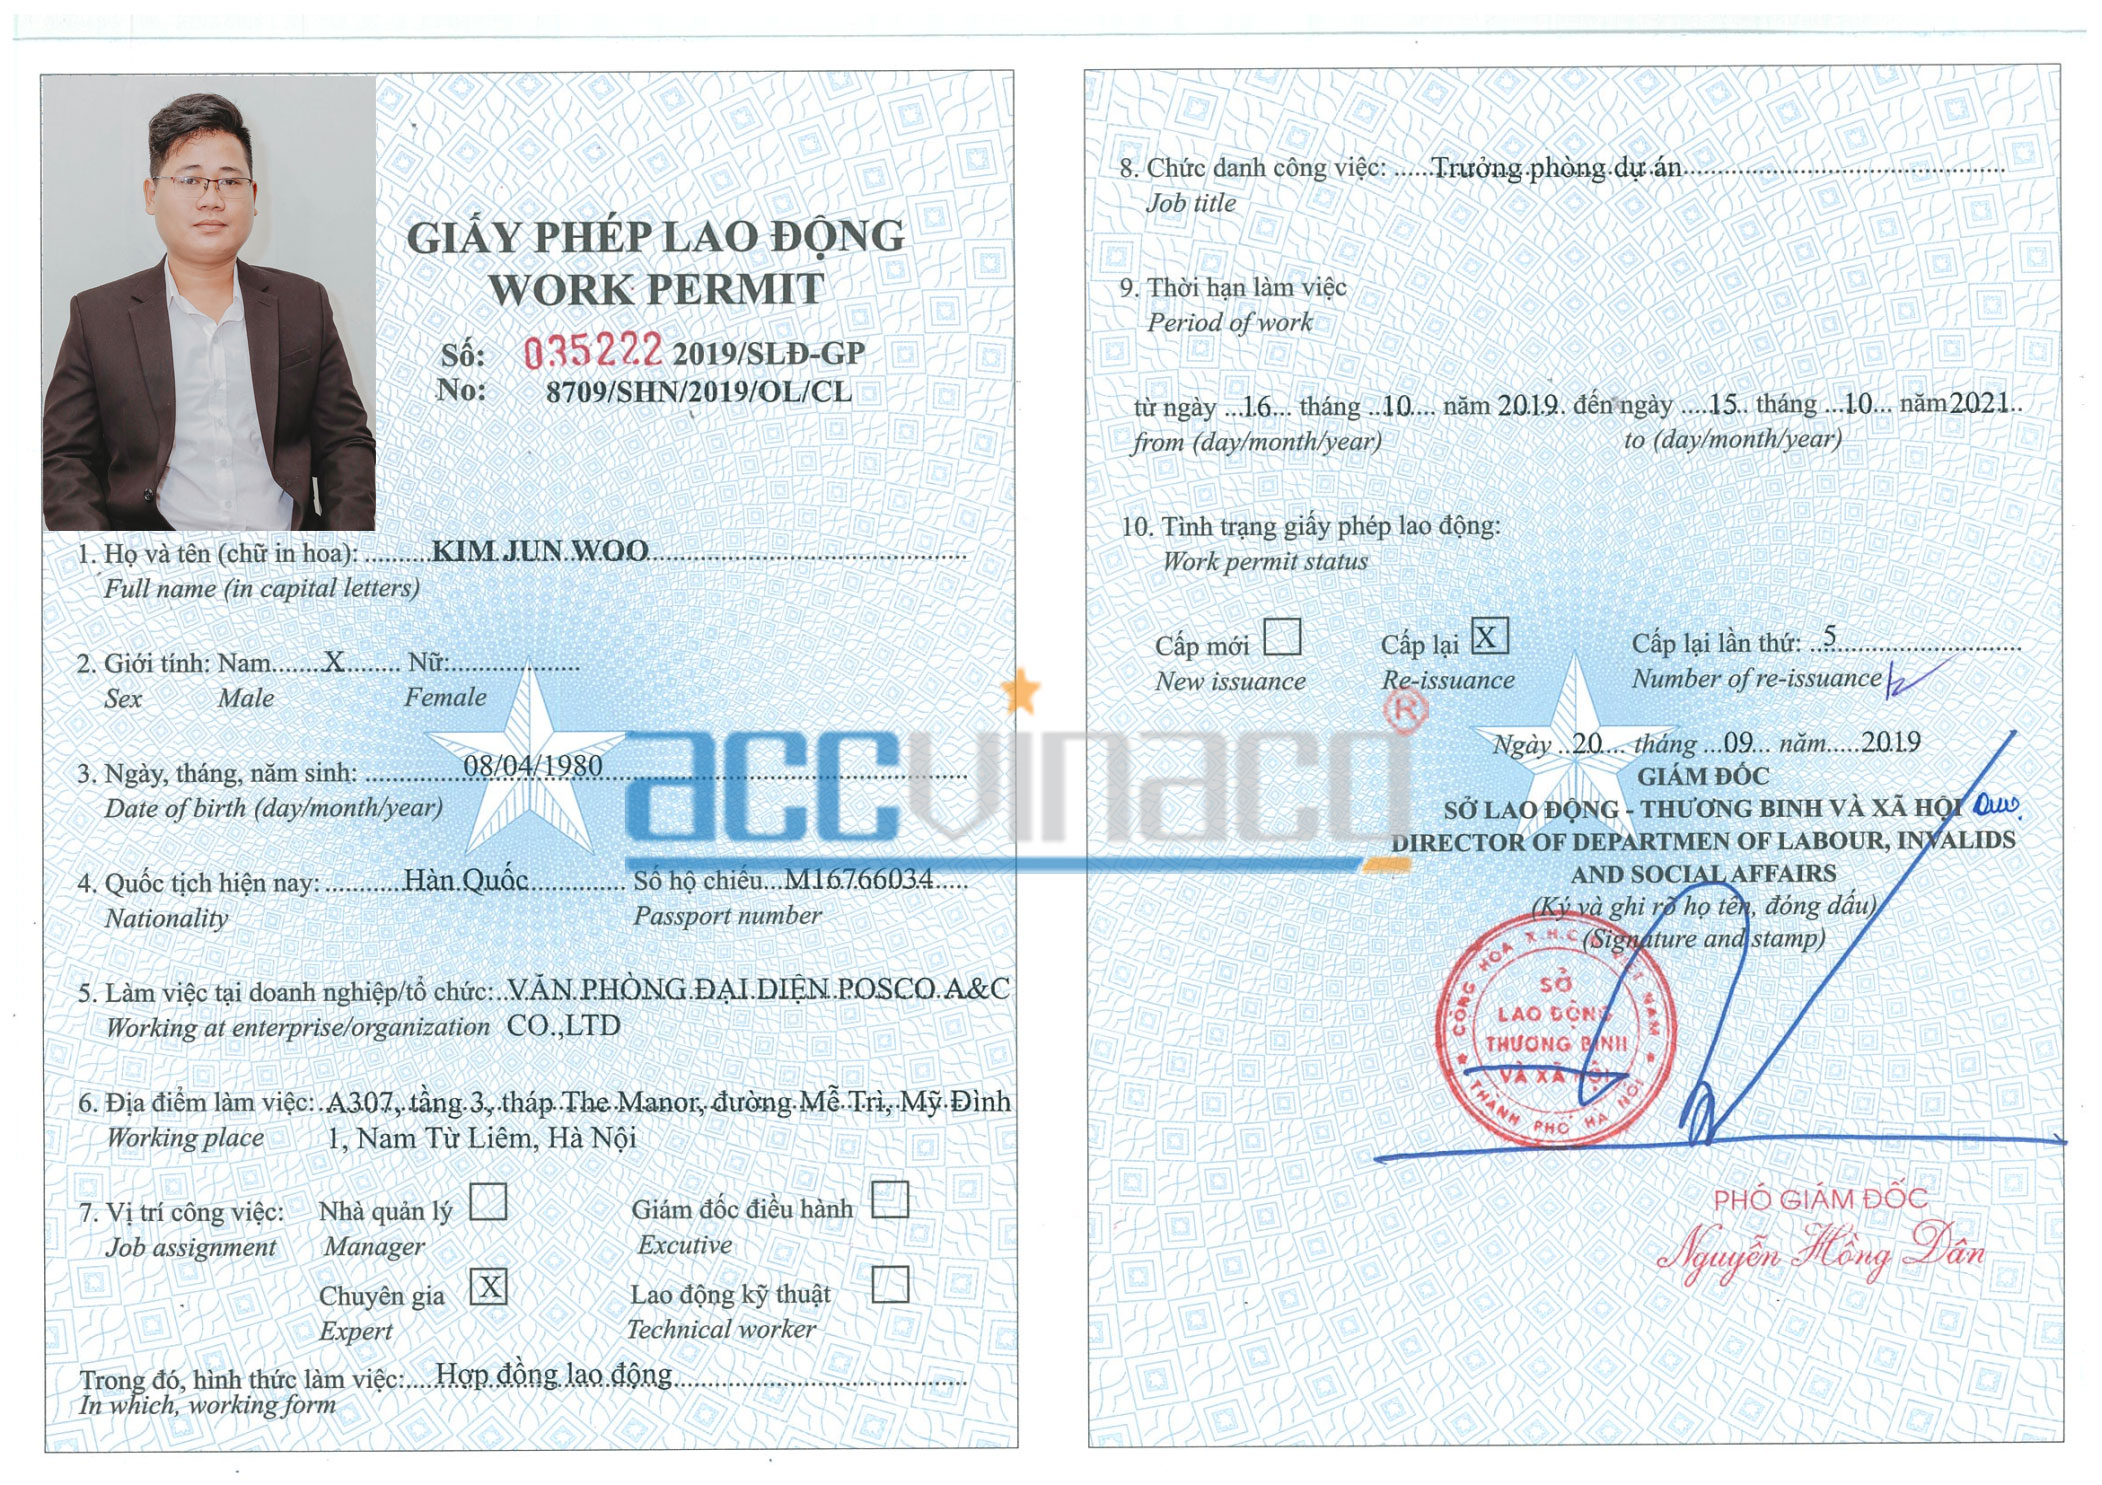 Quy trình cấp giấy phép lao động cho người nước ngoài tại Việt Nam